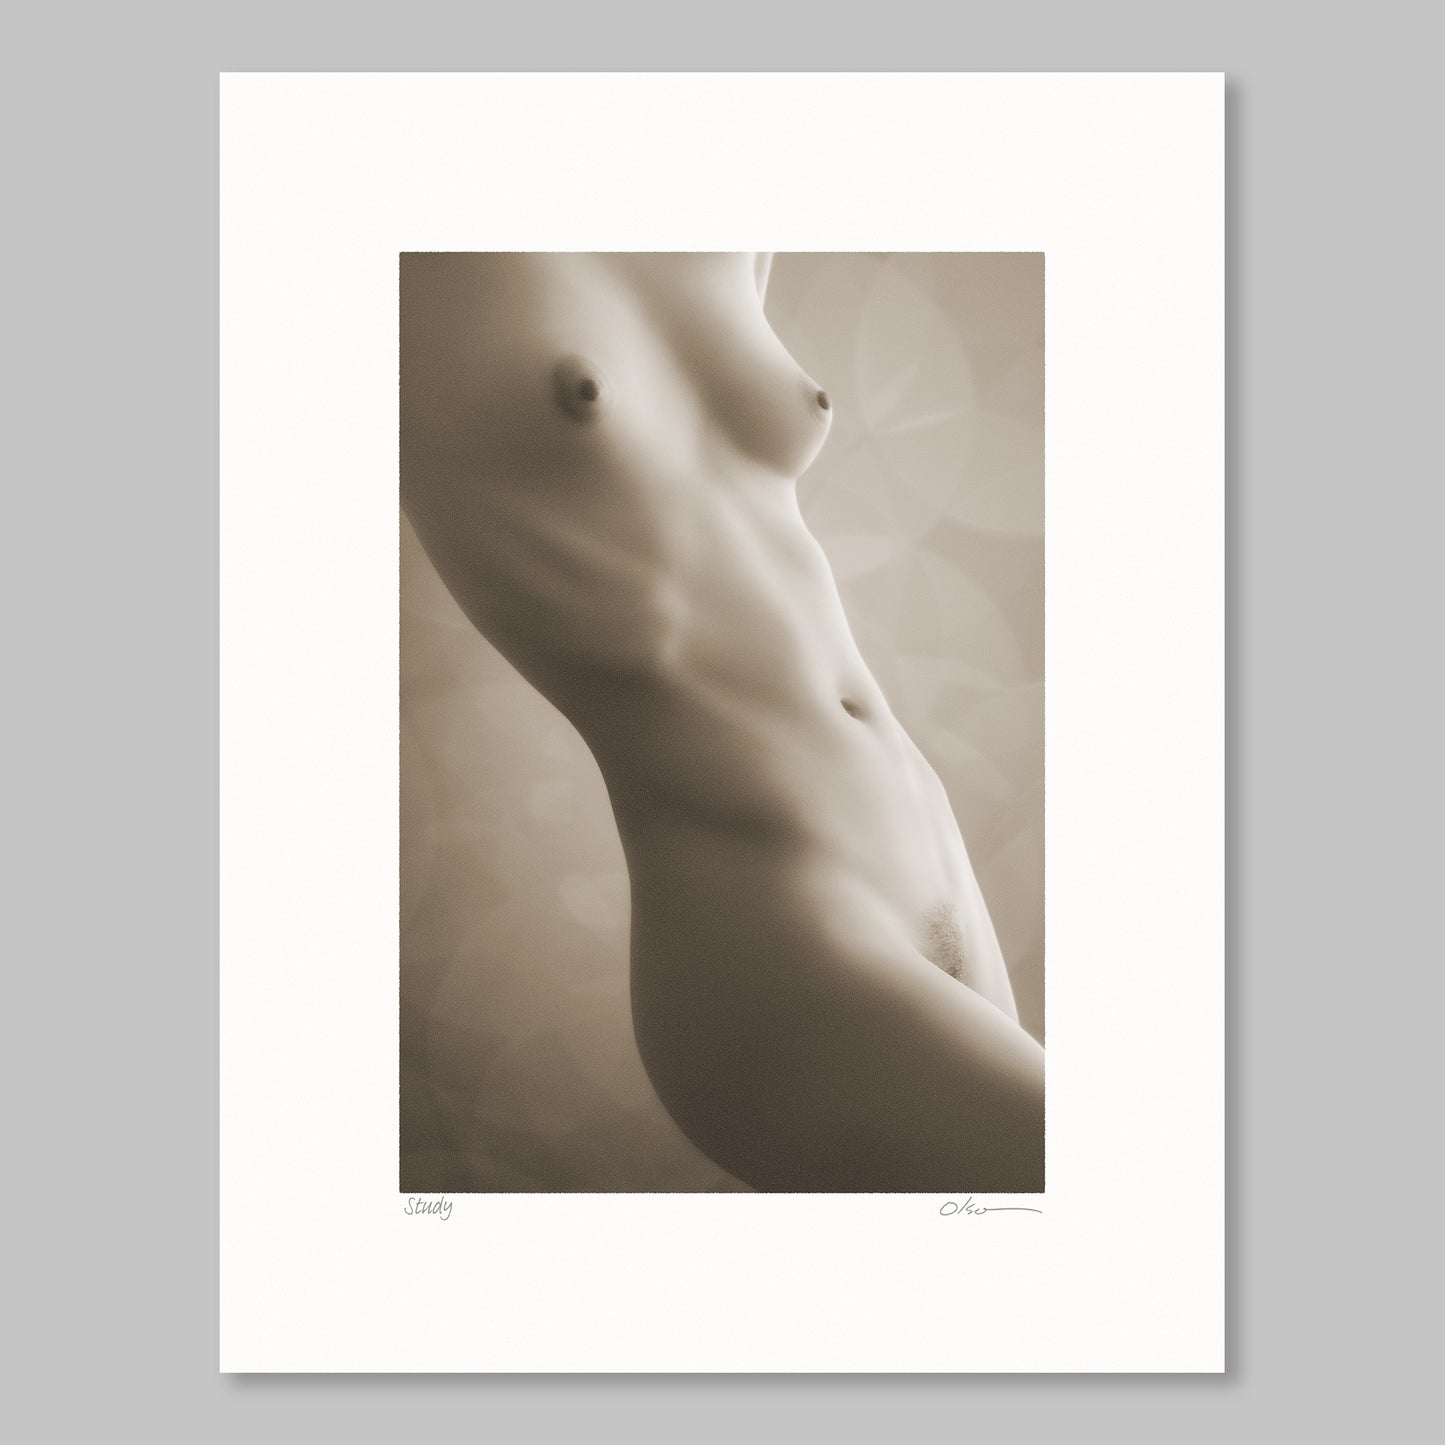 Study 23ST020 - Nude female torso figure study in sepia.